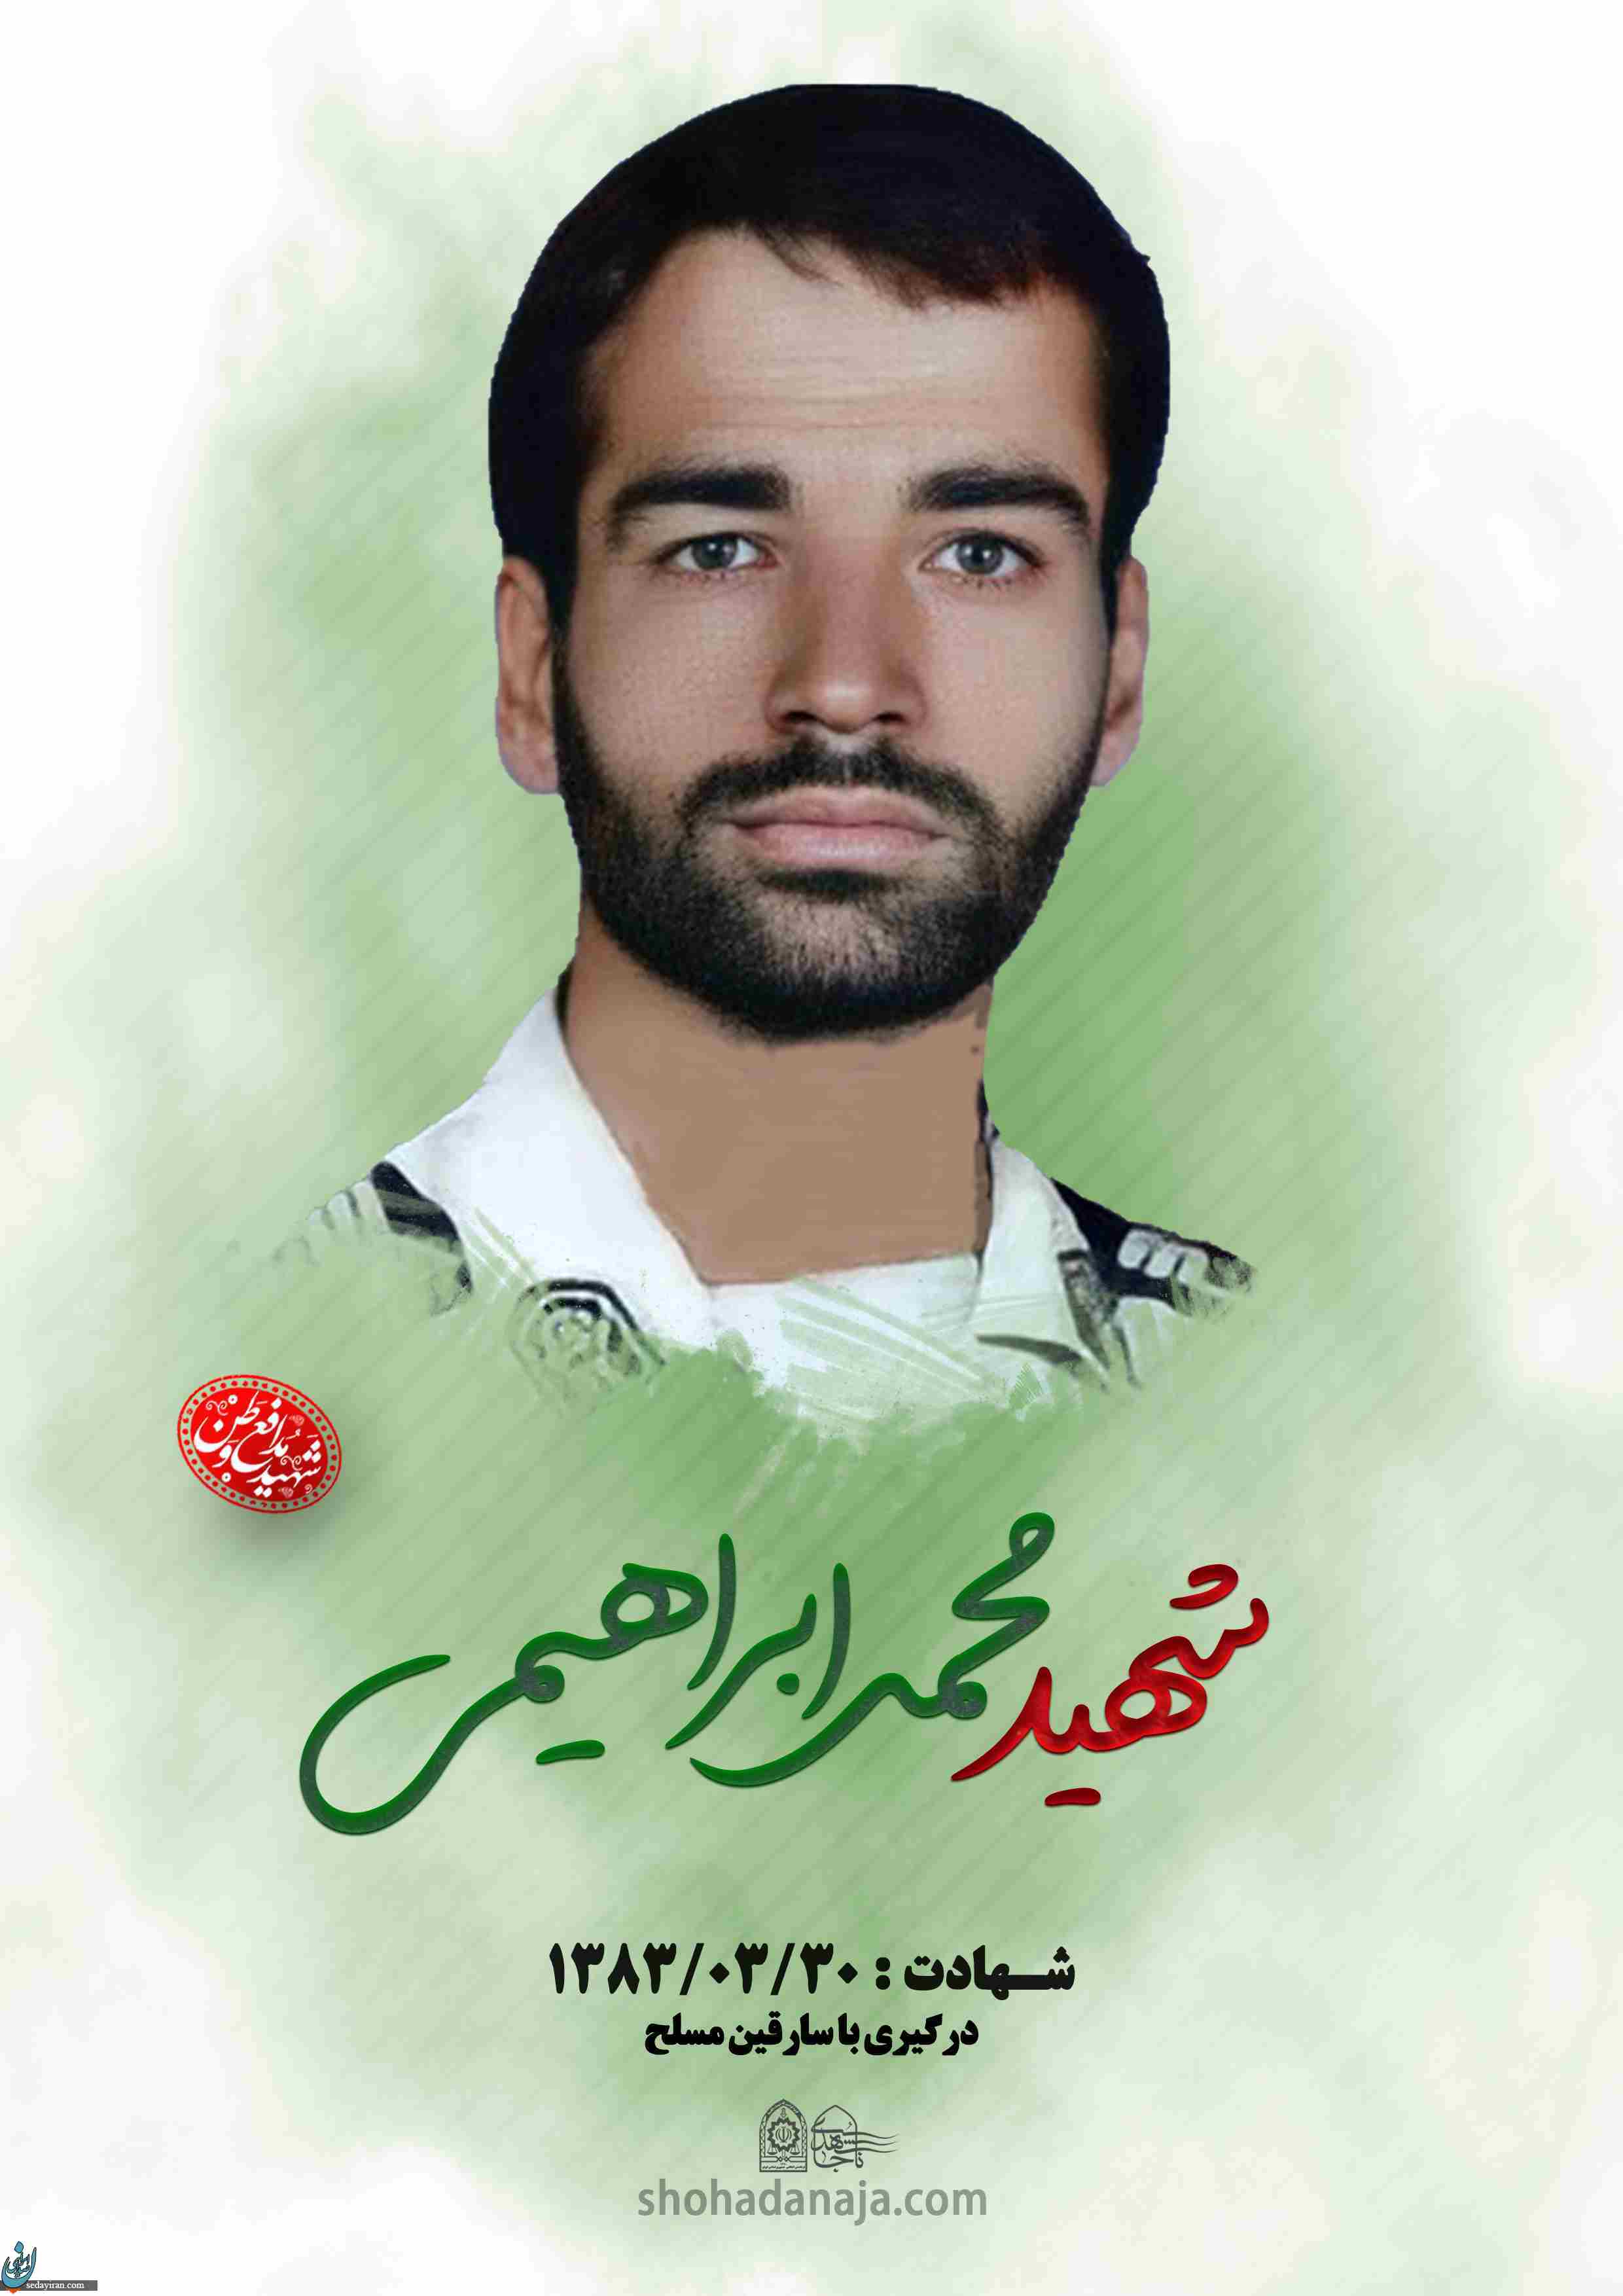 اعدام قاتل شهید محمد ابراهیمی در قم  /  این حکم در محل جرم اجرا شد